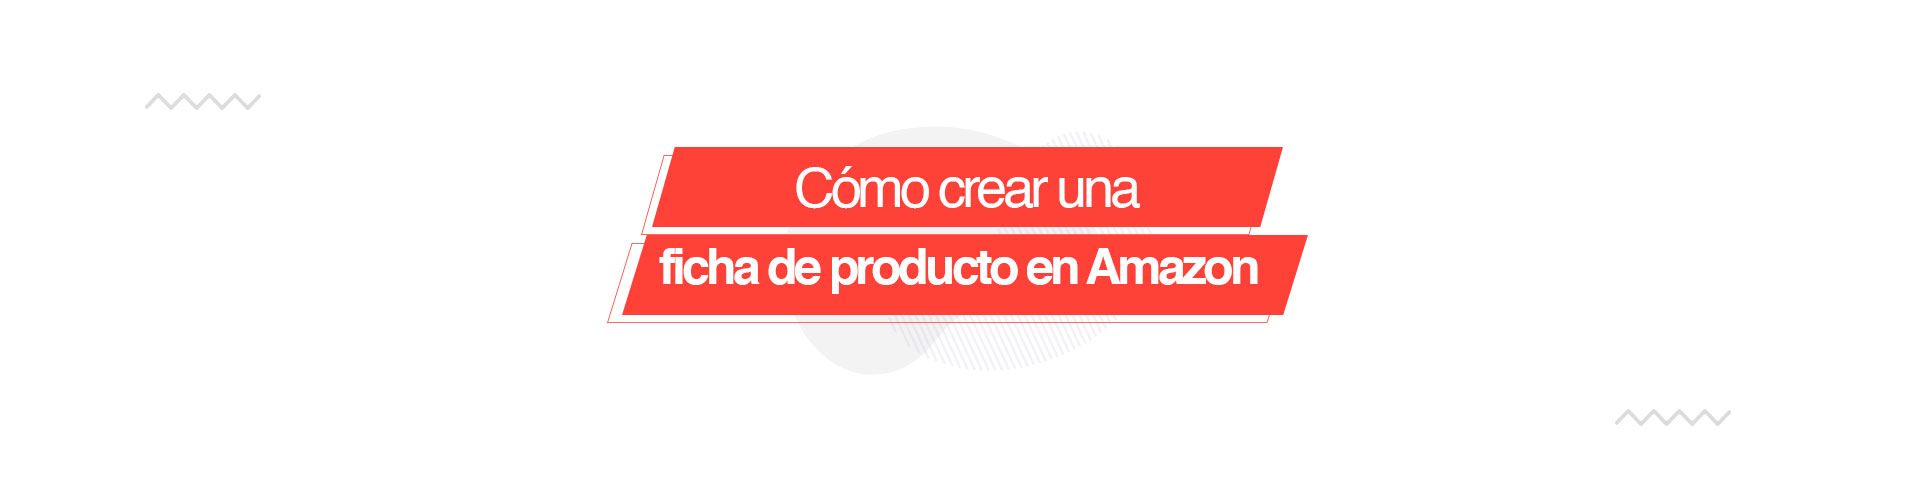 ficha producto Cómo crear una ficha de producto en Amazon